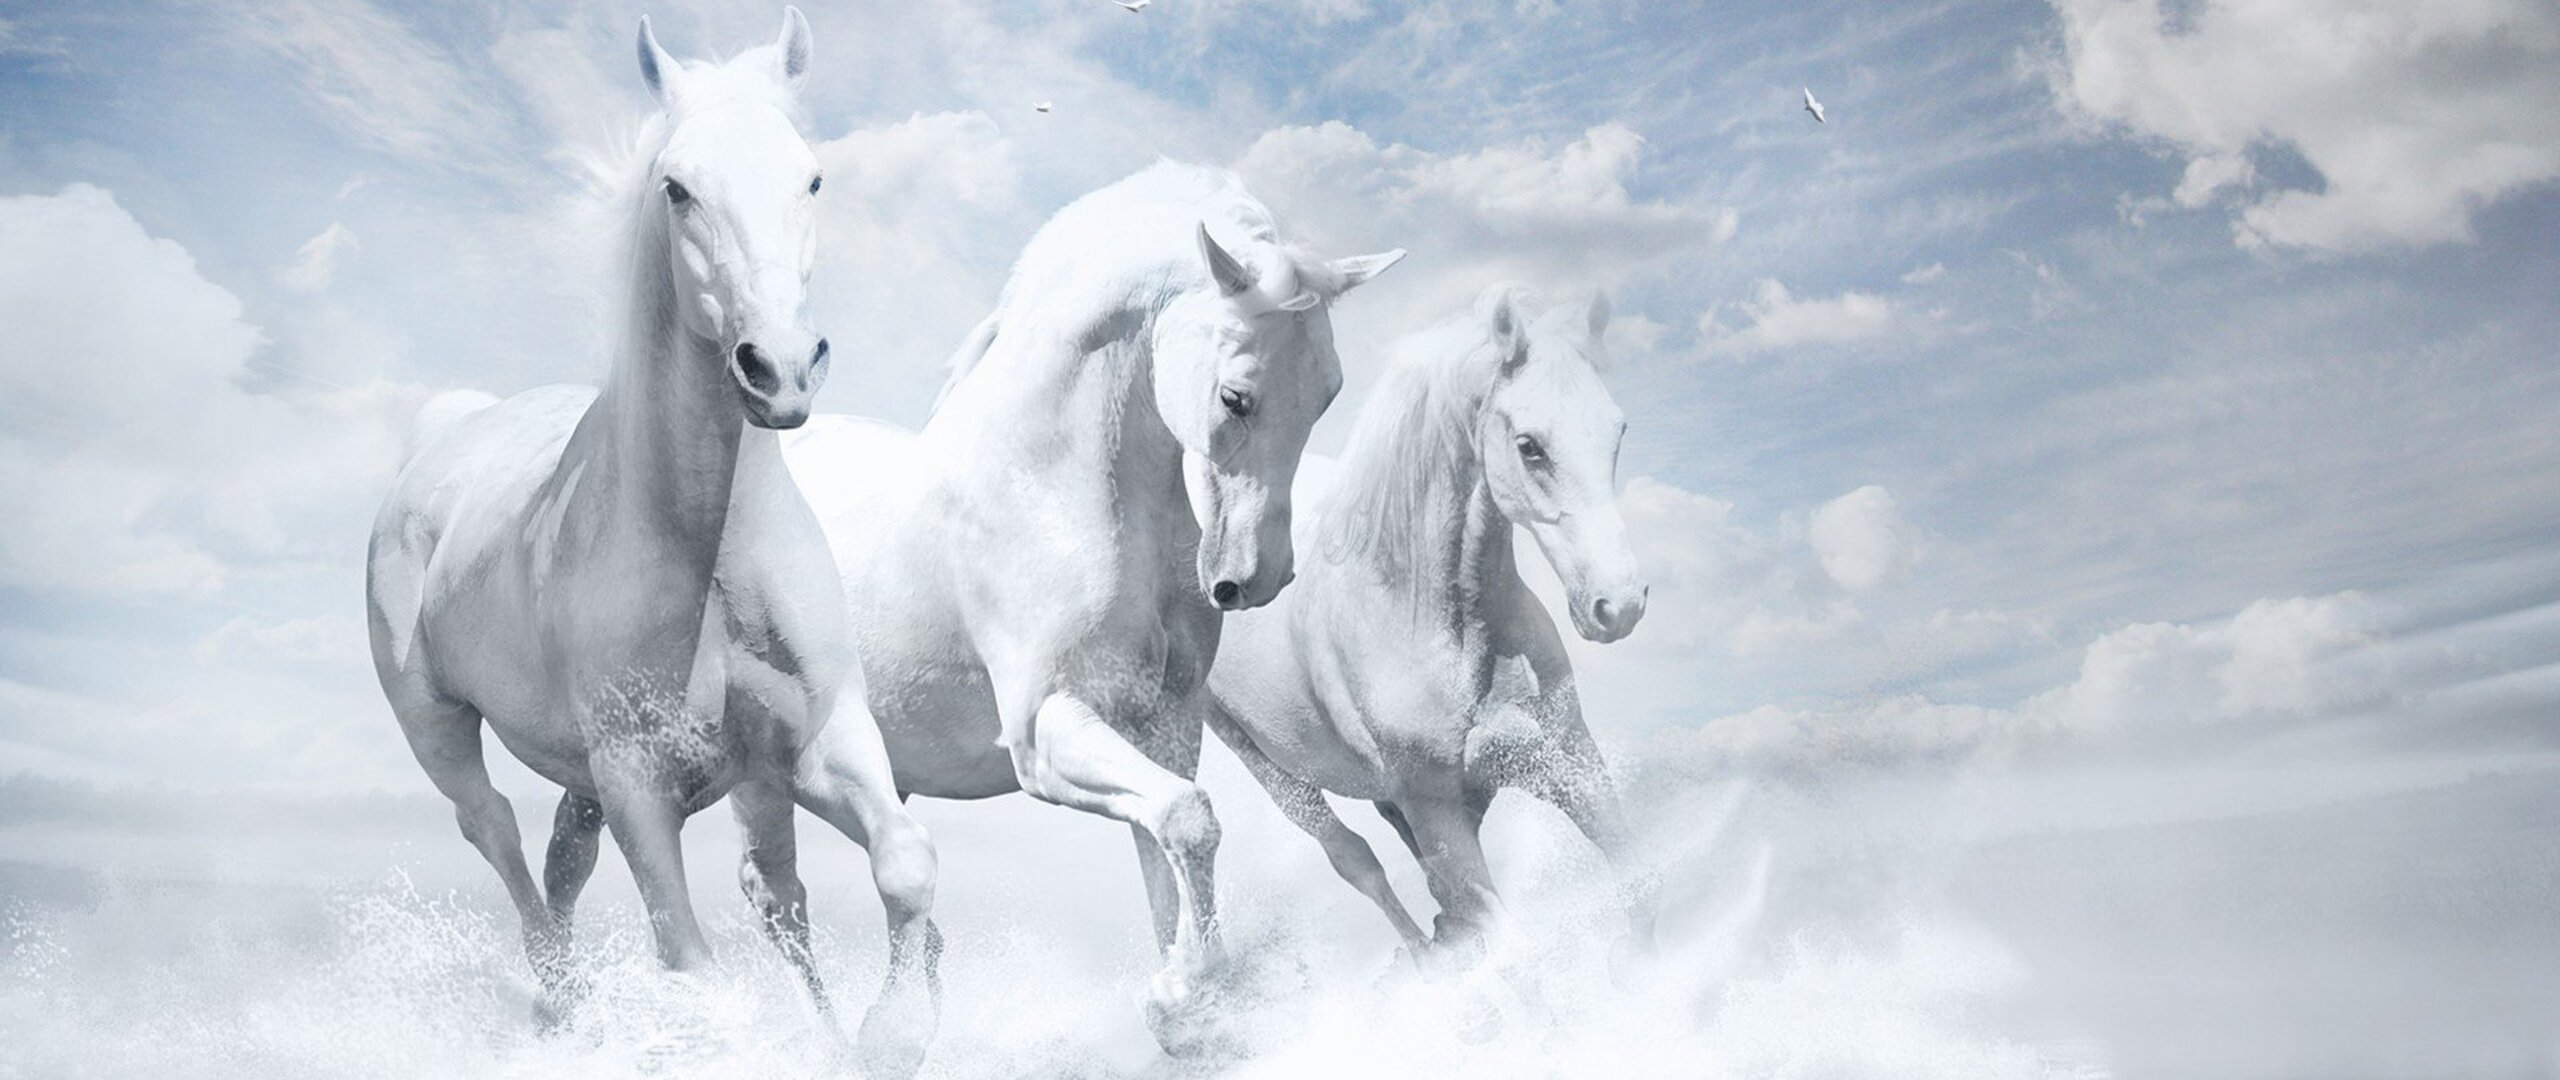 Horses song. Тройка белых лошадей. Белая лошадь. Баннер с лошадьми. Три лошади.